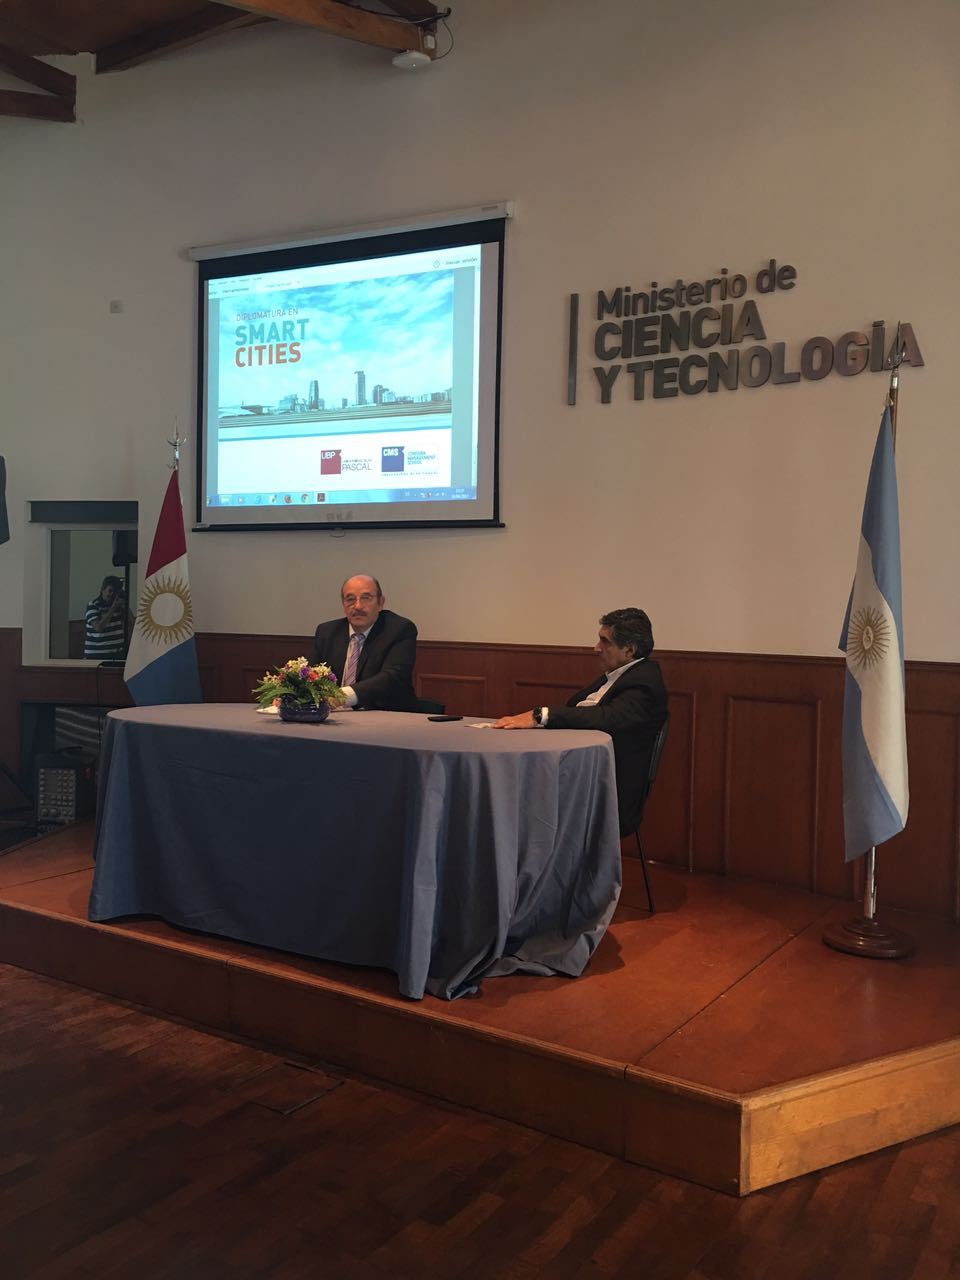 Se lanzó la Diplomatura en Smart Cities en el Ministerio de Ciencia y Tecnología